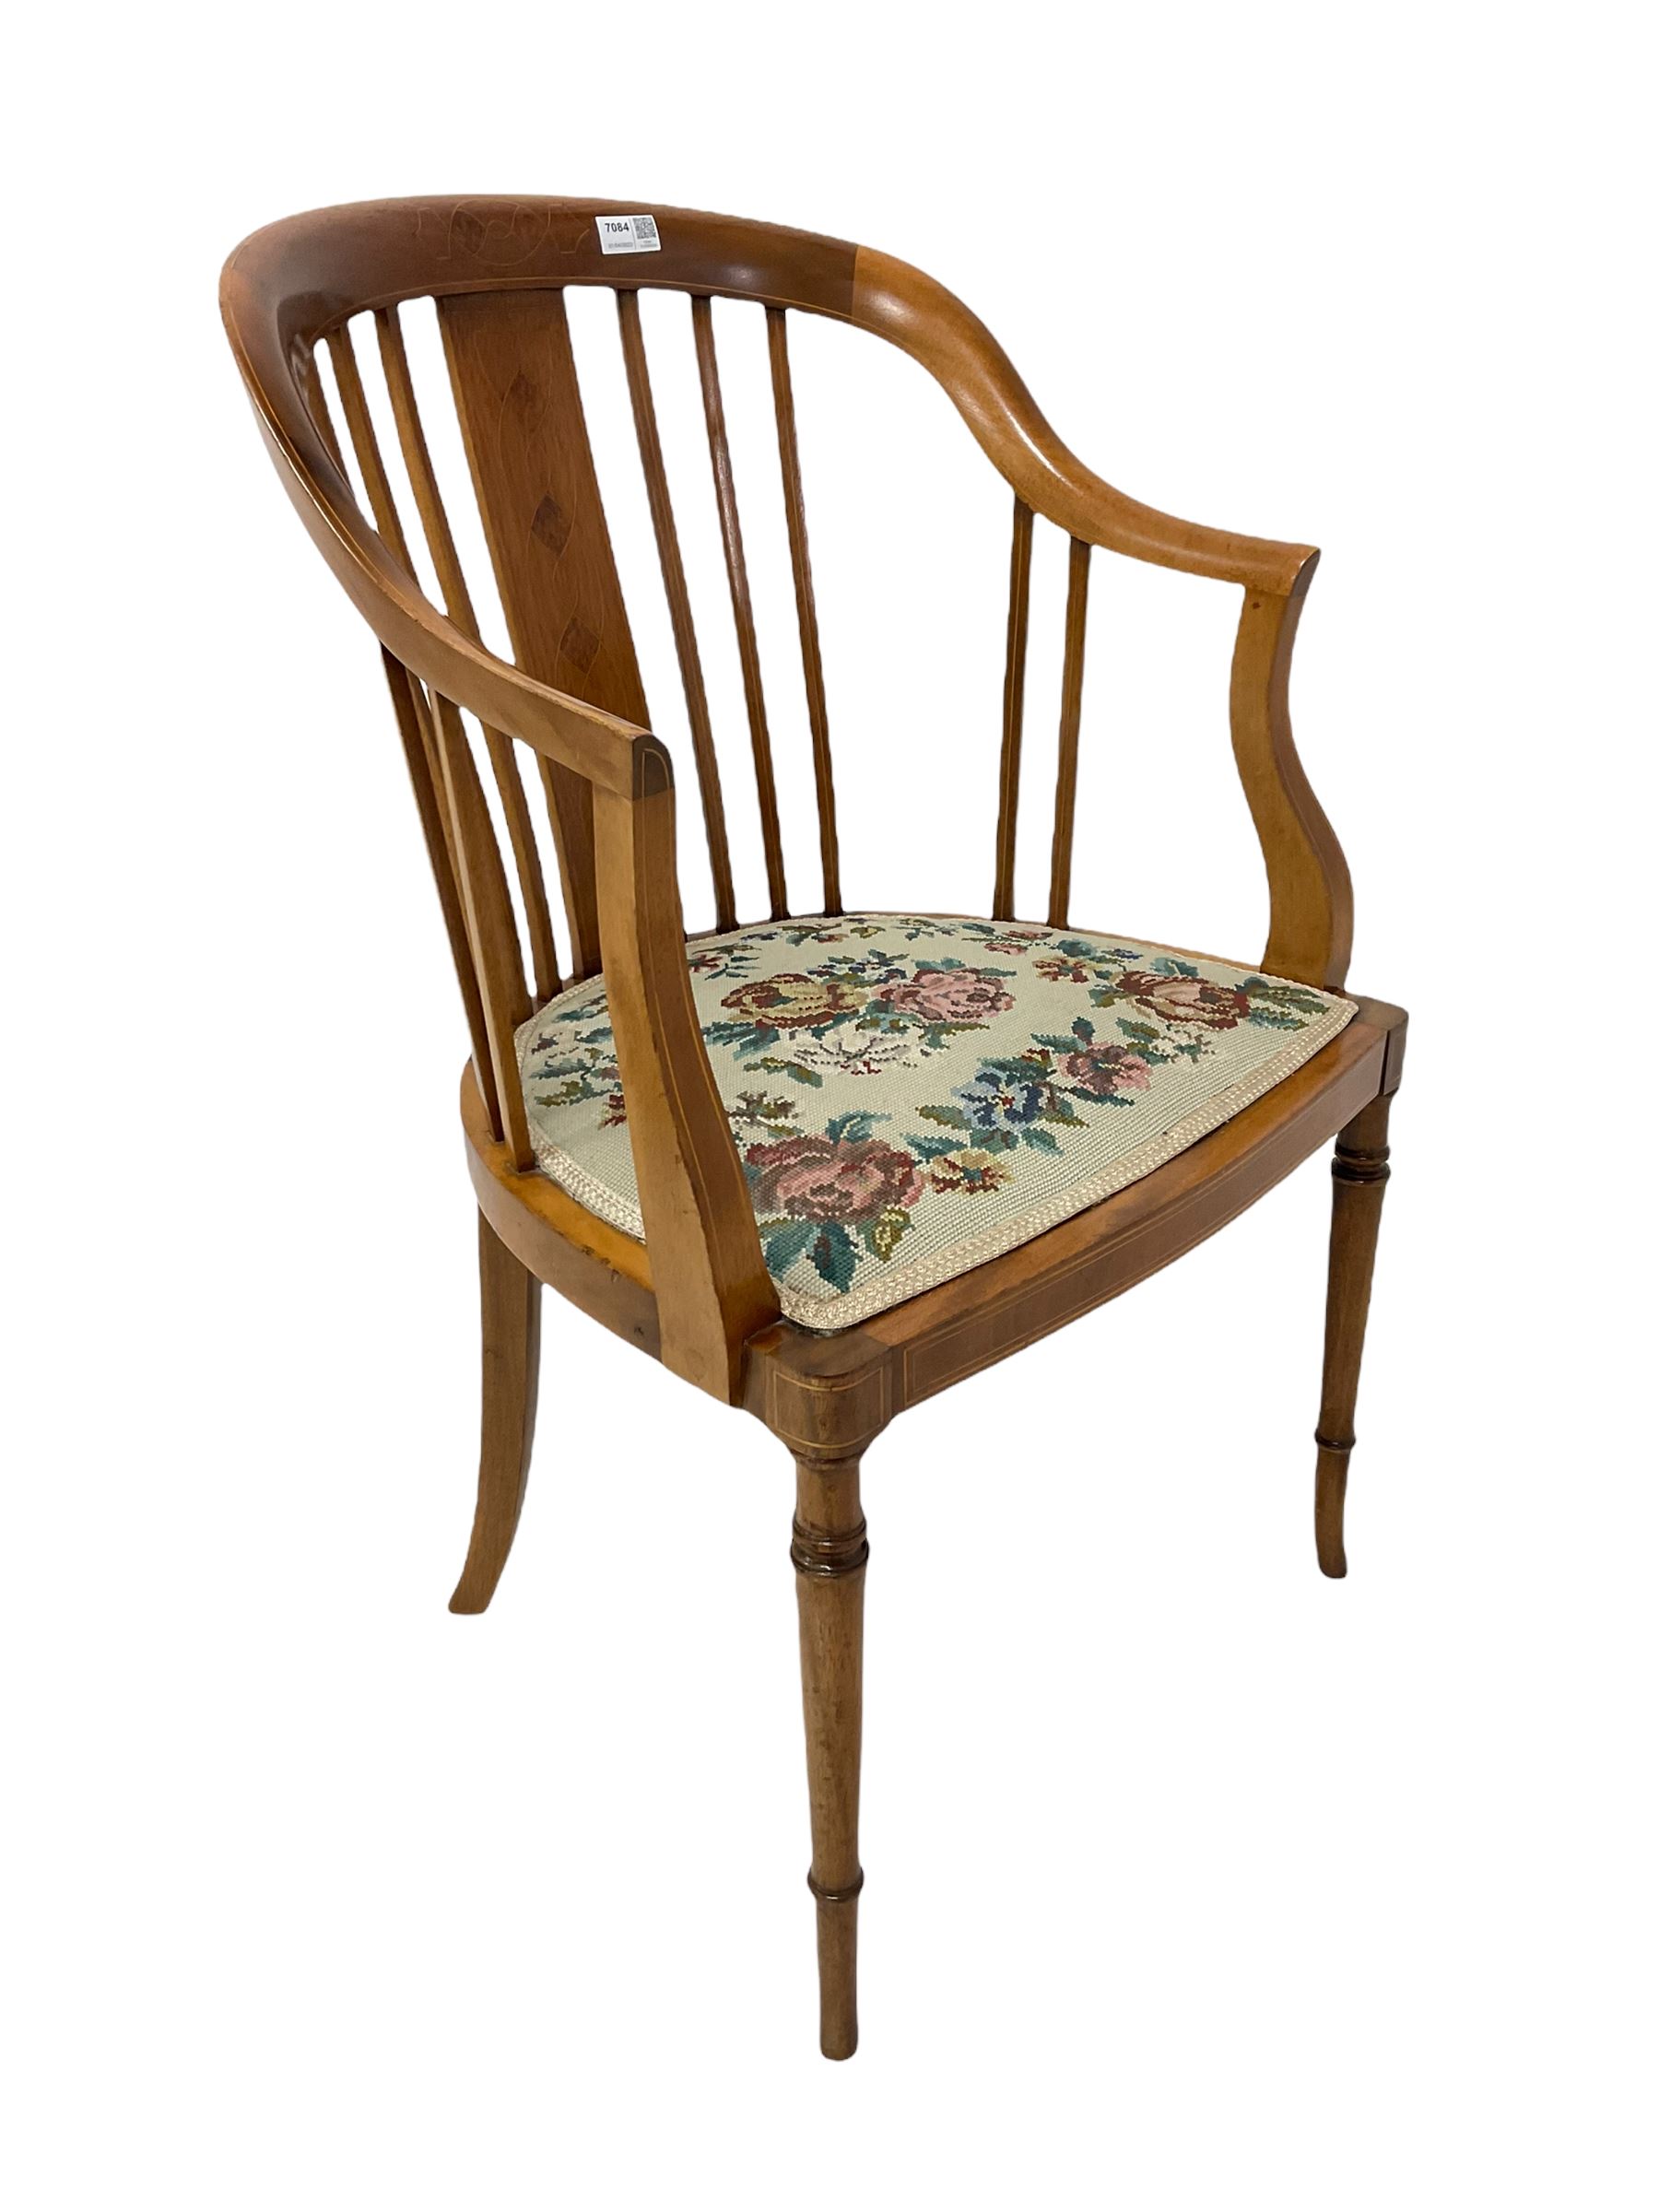 Edwardian mahogany tub shape chair - Image 2 of 4